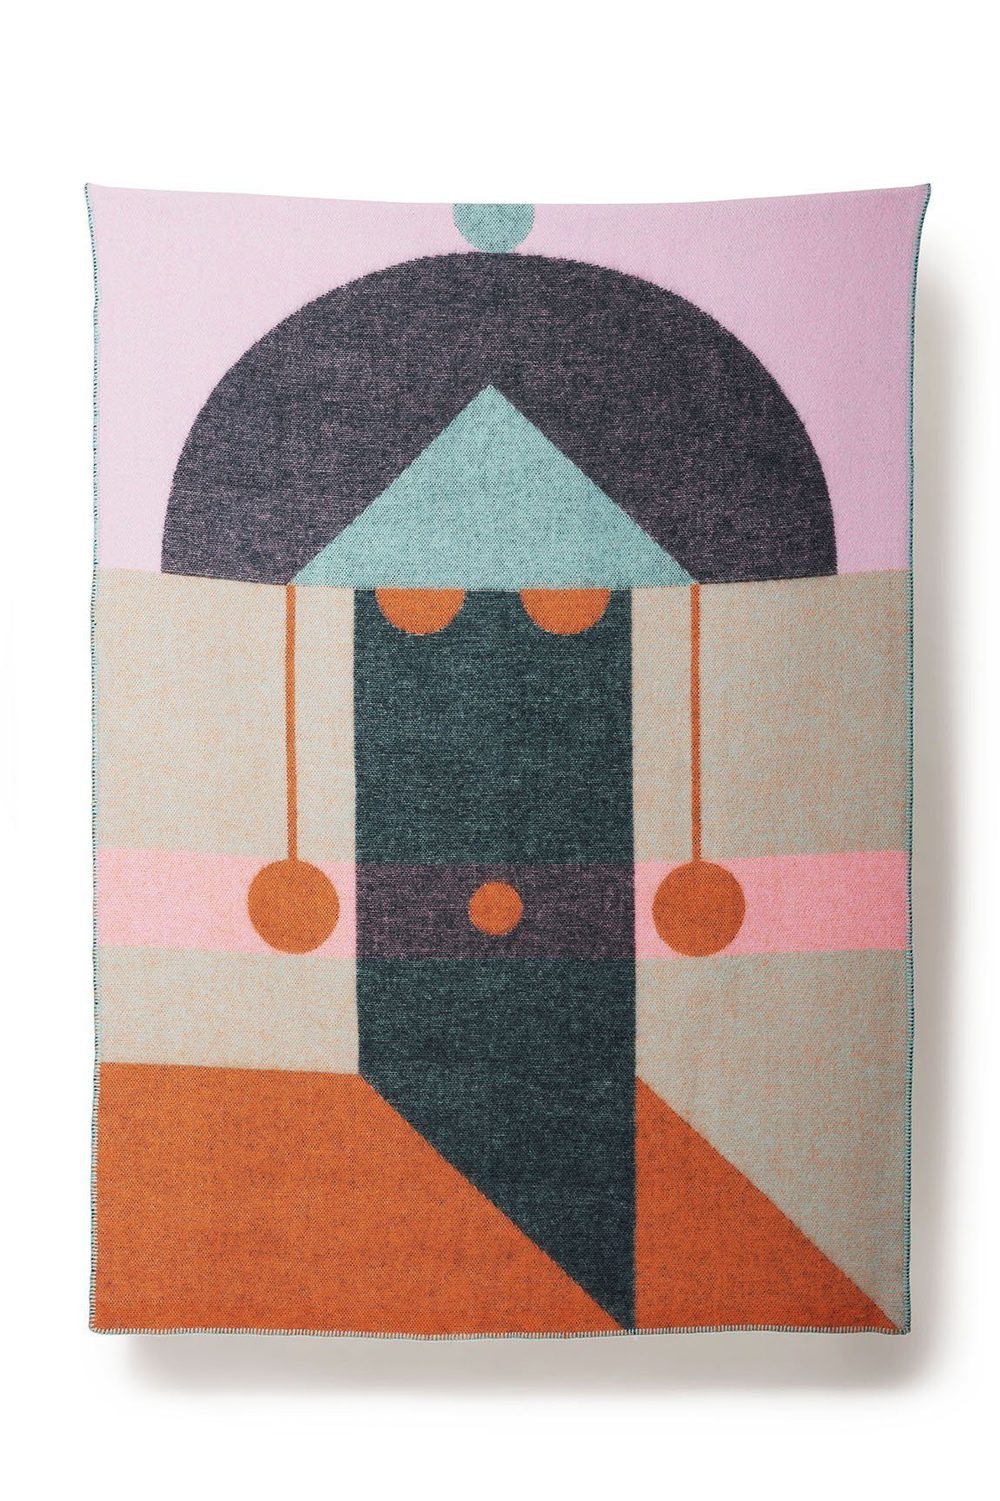 Hanae Wolldecke in Multicolor präsentiert im Onlineshop von KAQTU Design AG. Wolldecke ist von ZigZagZurich